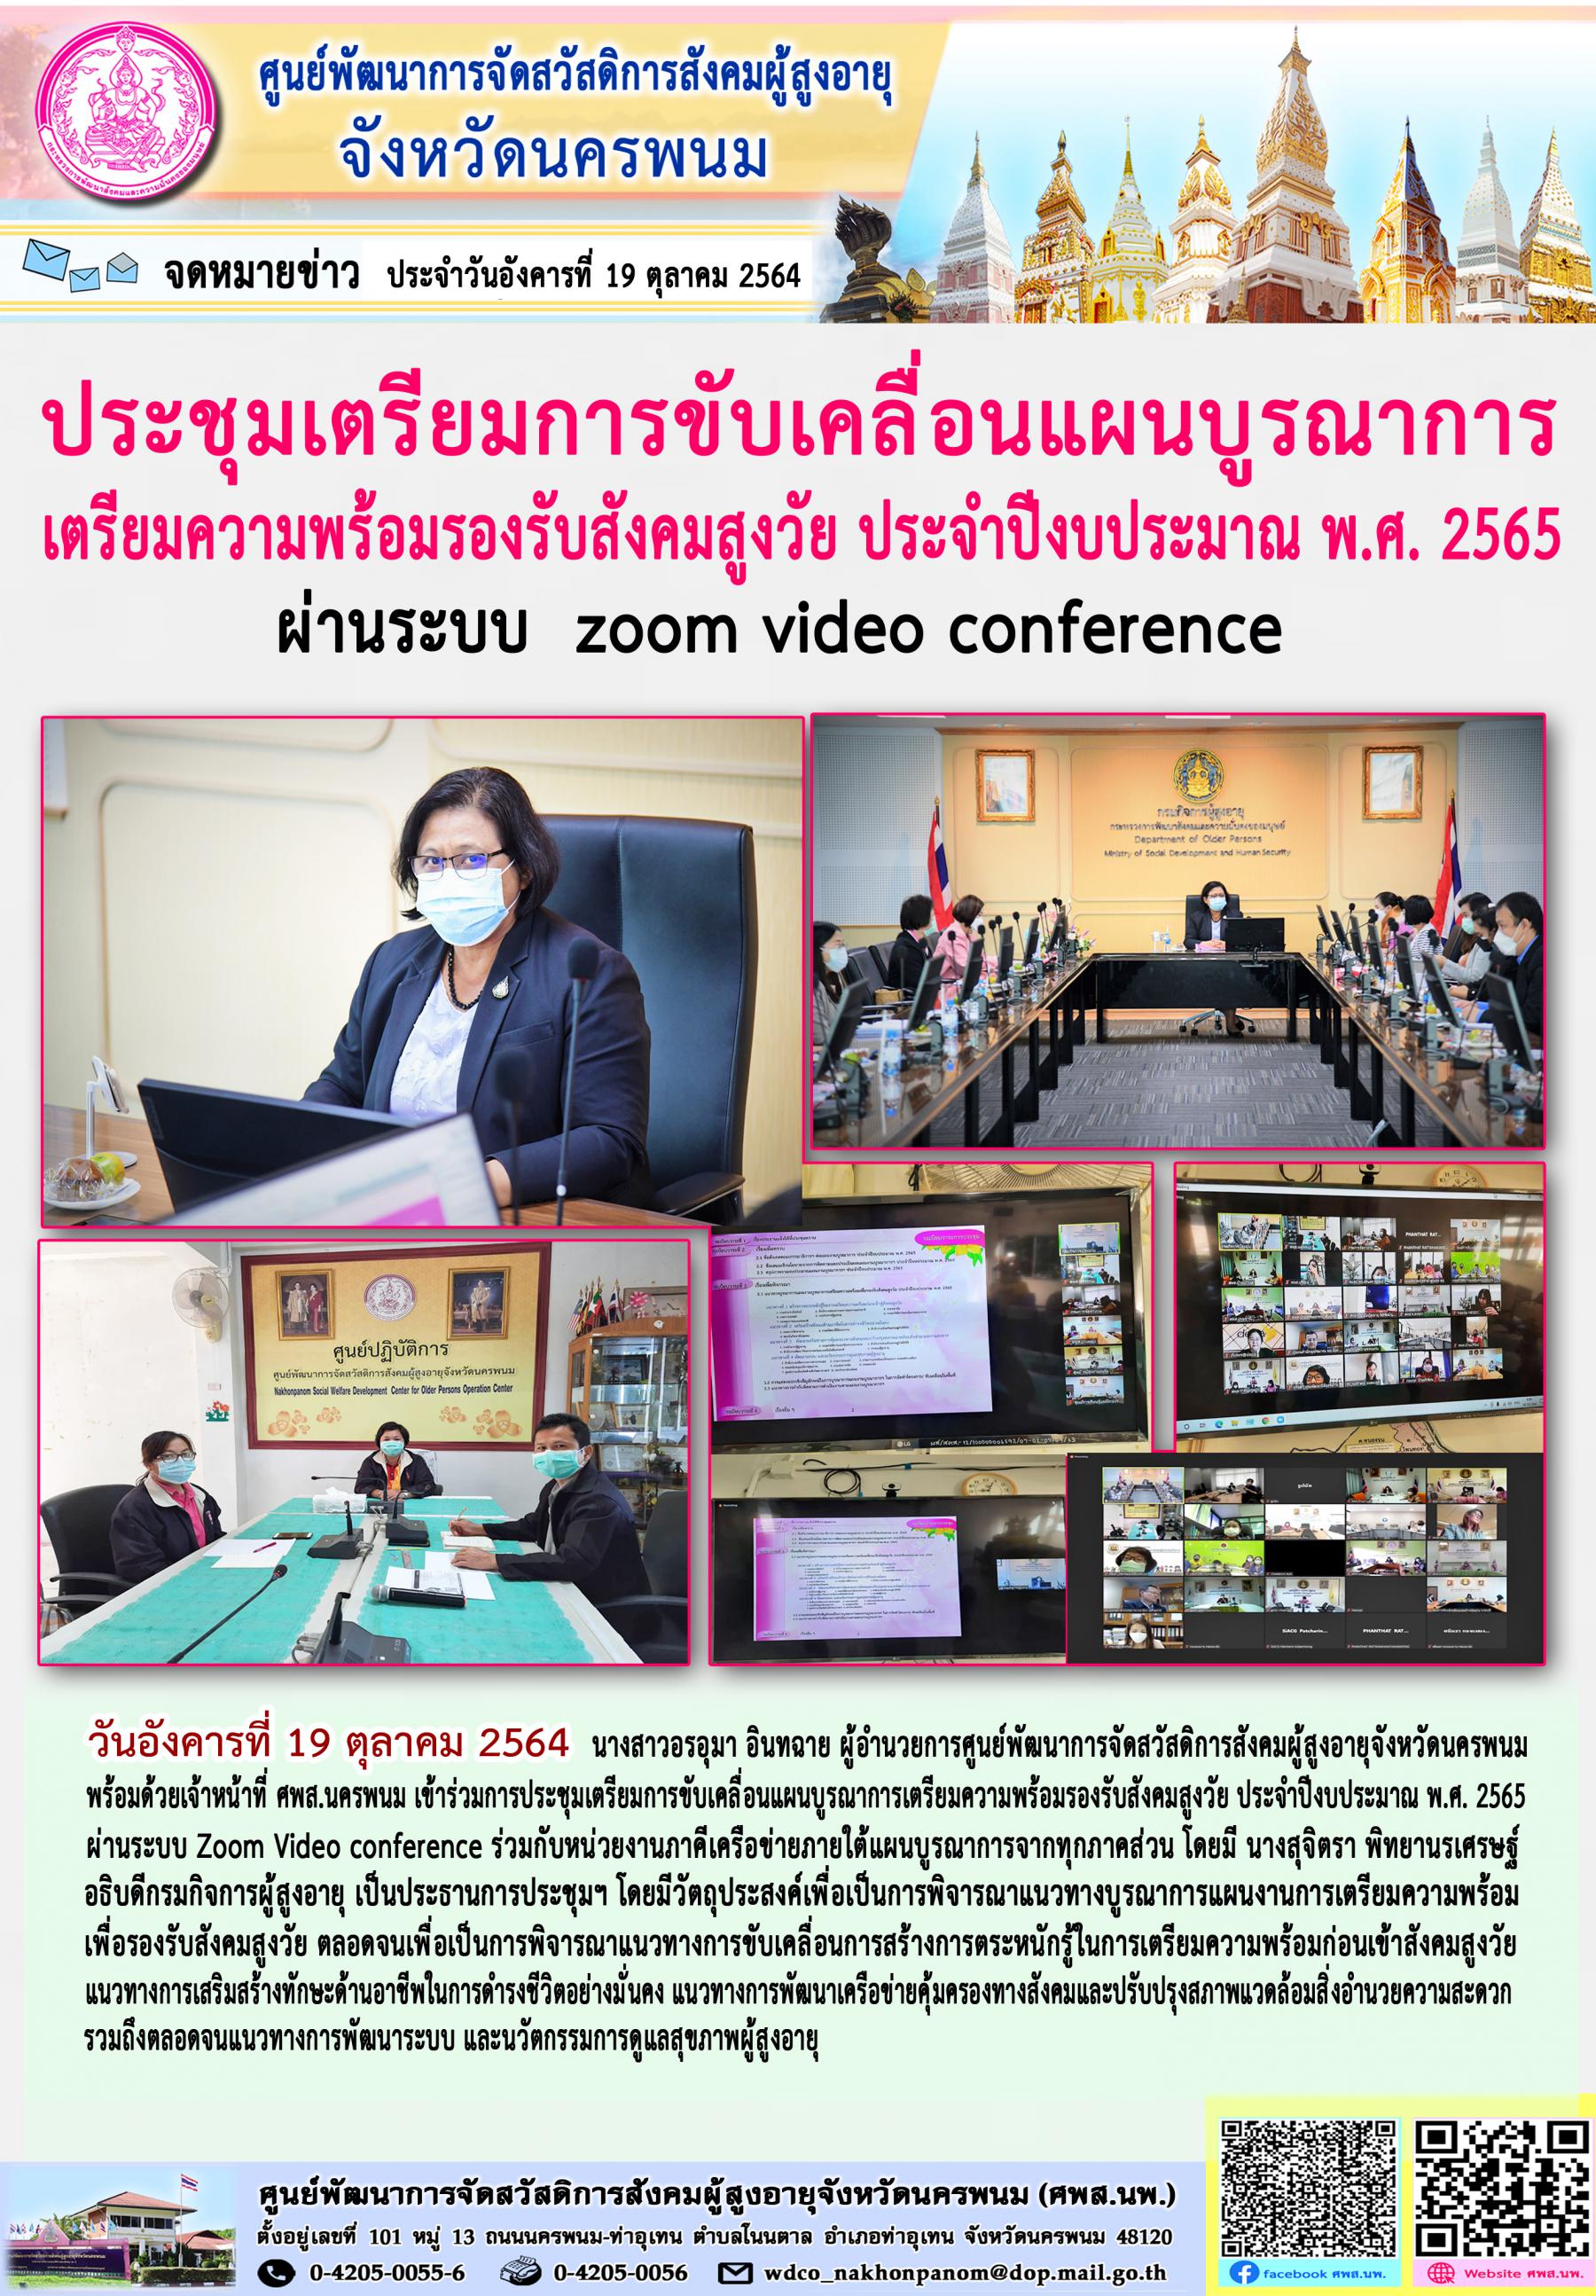 ประชุมเตรียมการขับเคลื่อนแผนบูรณาการเตรียมความพร้อมรองรับสังคมสูงวัย ประจำปีงบประมาณ พ.ศ. 2565 ผ่านระบบ Zoom Video conference